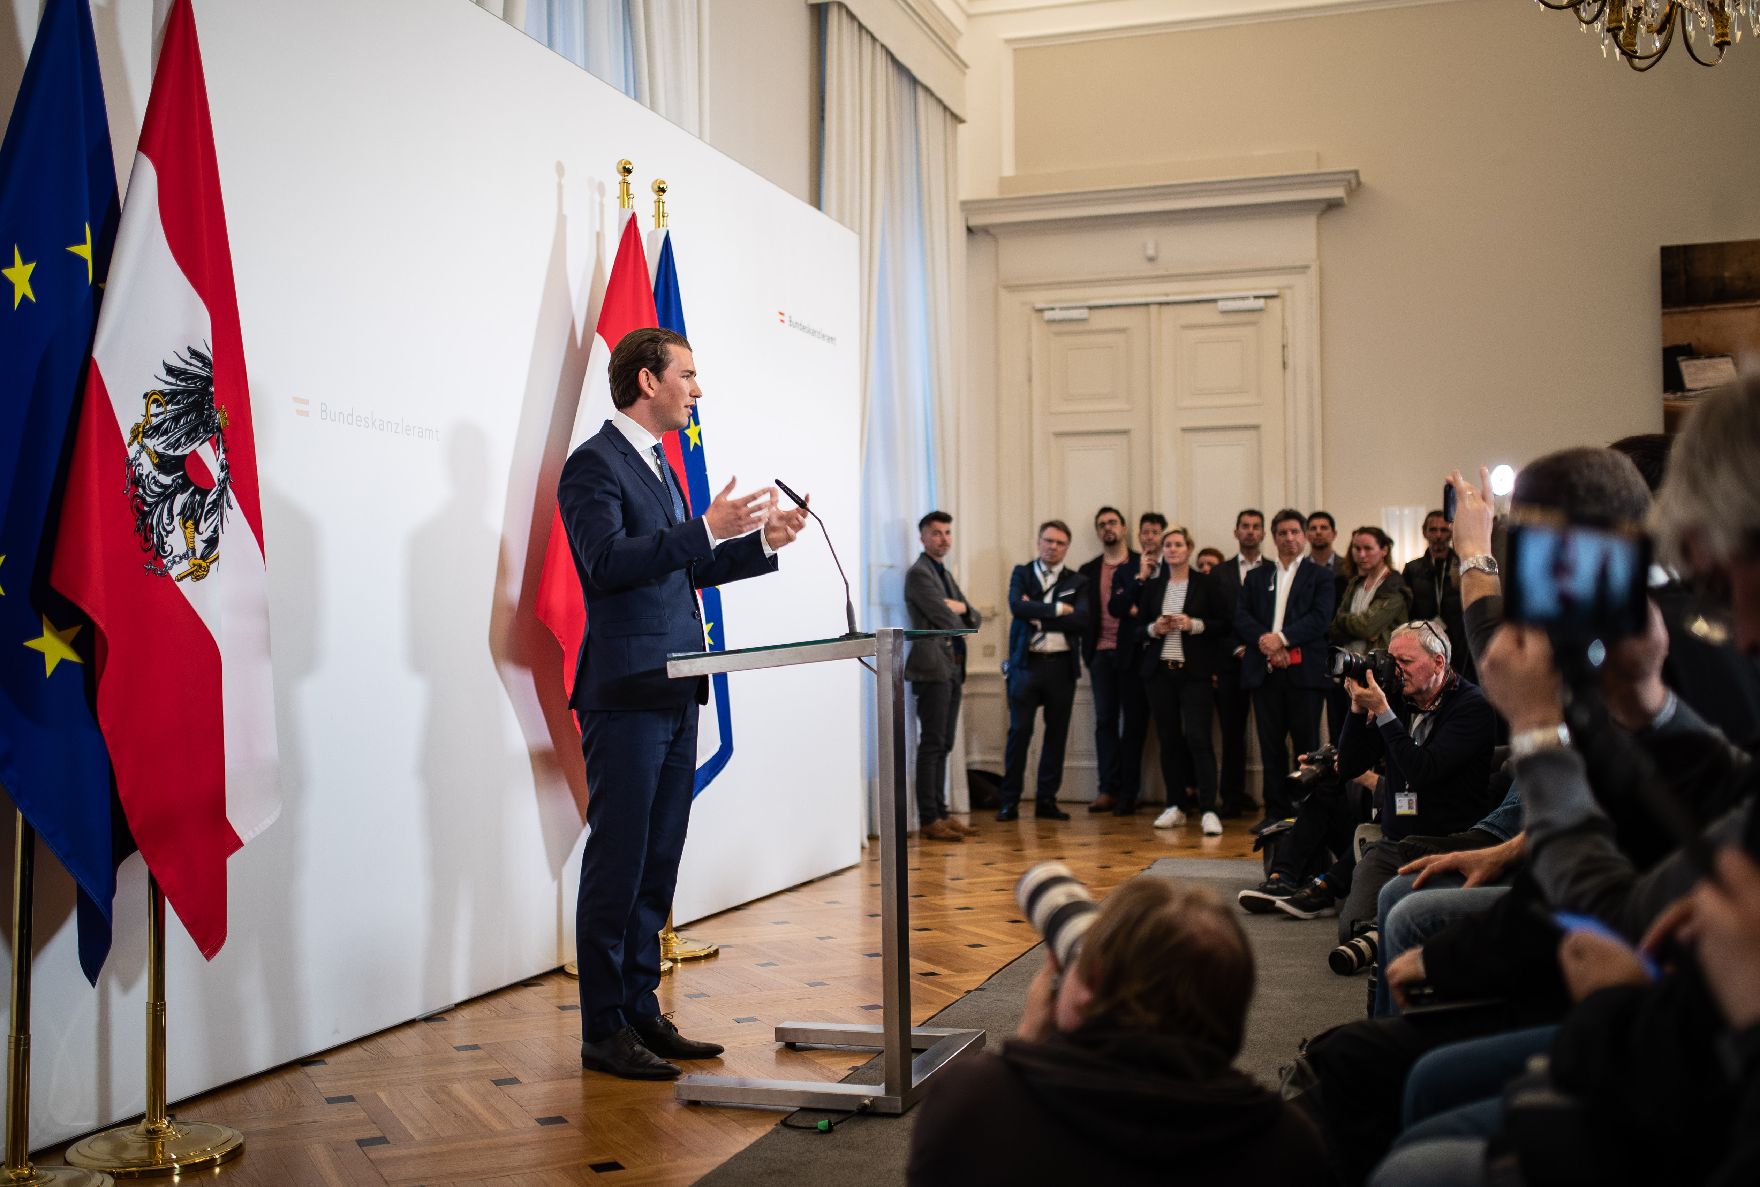 Am 18. Mai 2019 gab Bundeskanzler Sebastian Kurz eine Pressekonferenz zur aktuellen politischen Lage.